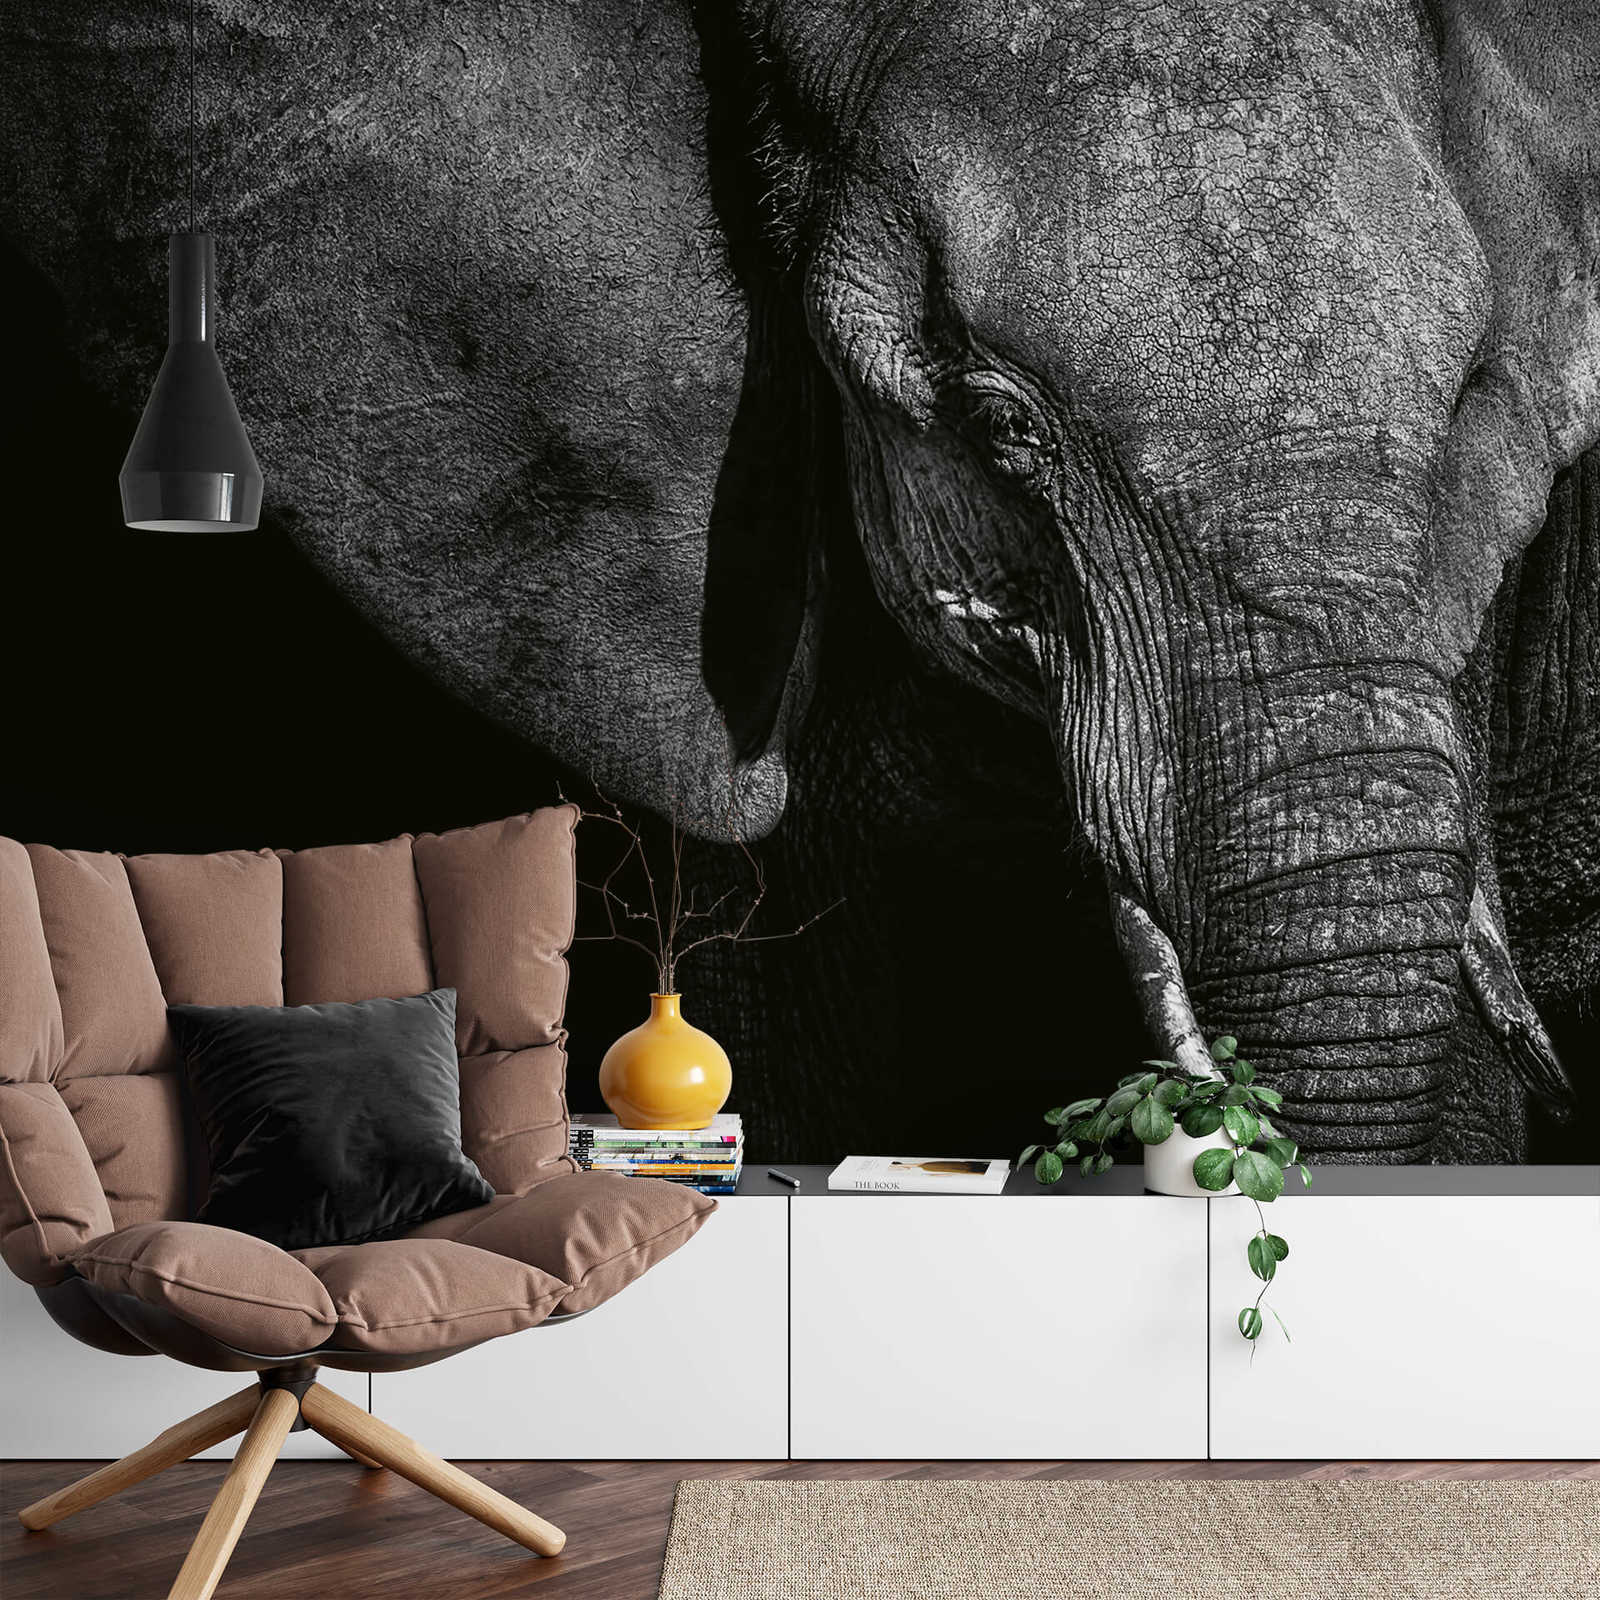             Muurschildering Dierenolifant - Zwart, Grijs, Wit
        